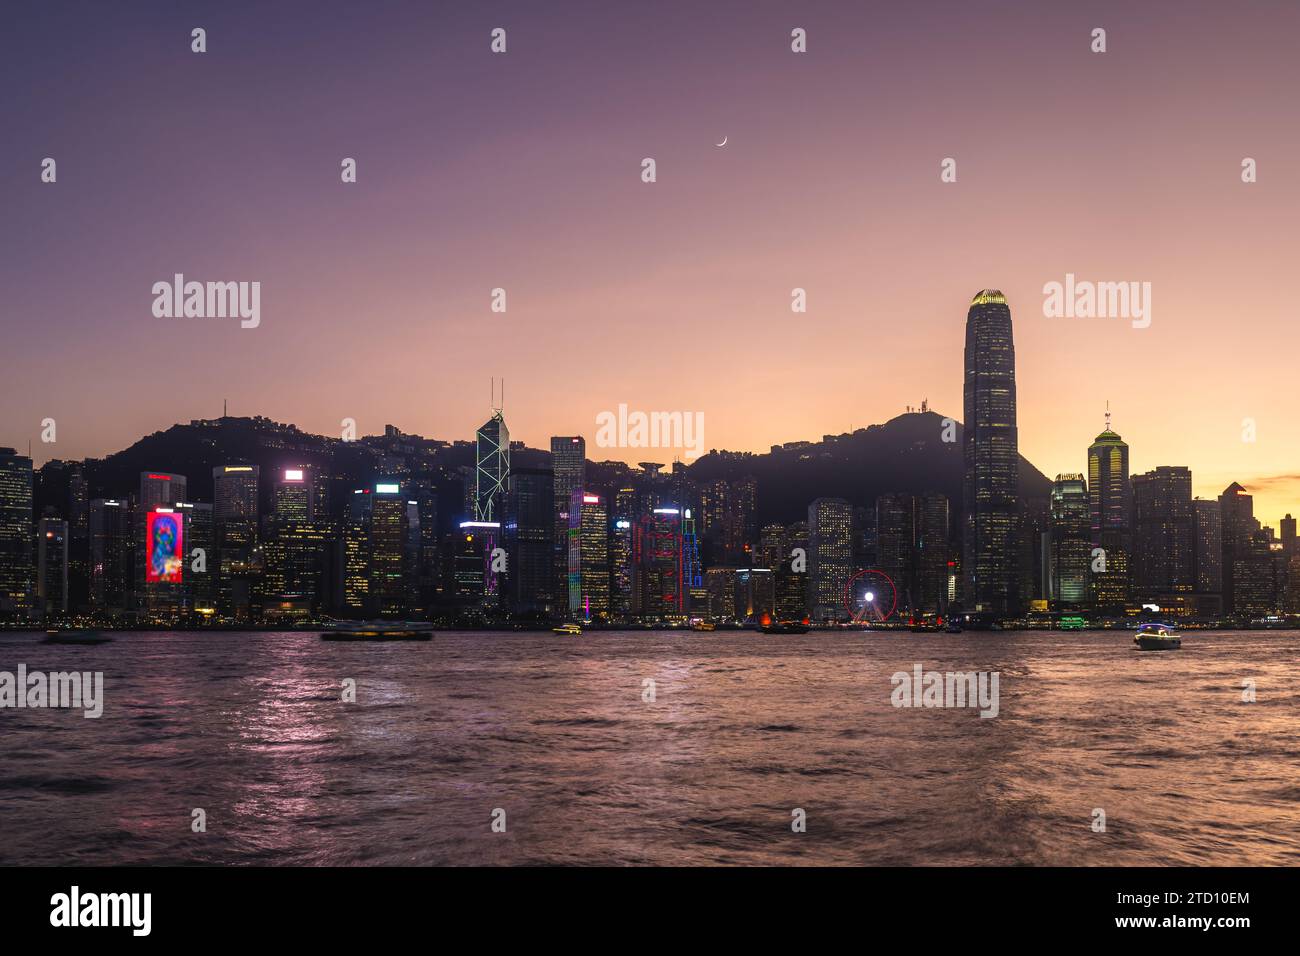 Vue nocturne du port de victoria et de l'île de hong kong, Chine Banque D'Images